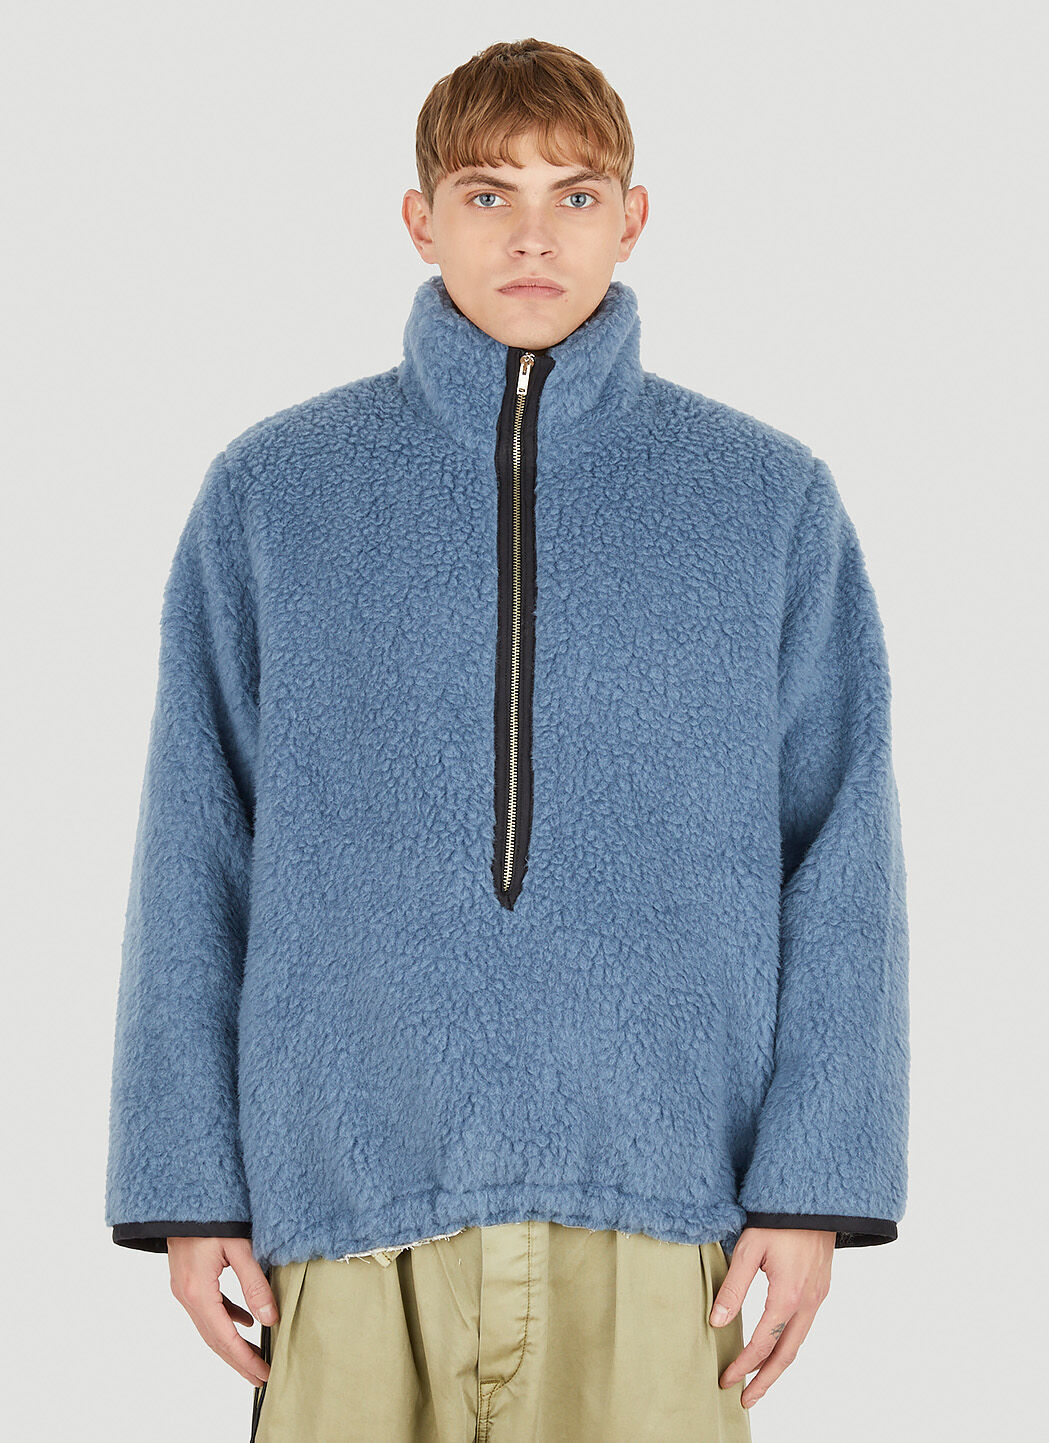 Camiel Fortgens Unisex Fleece Zip Sweatshirt in Blue | LN-CC®